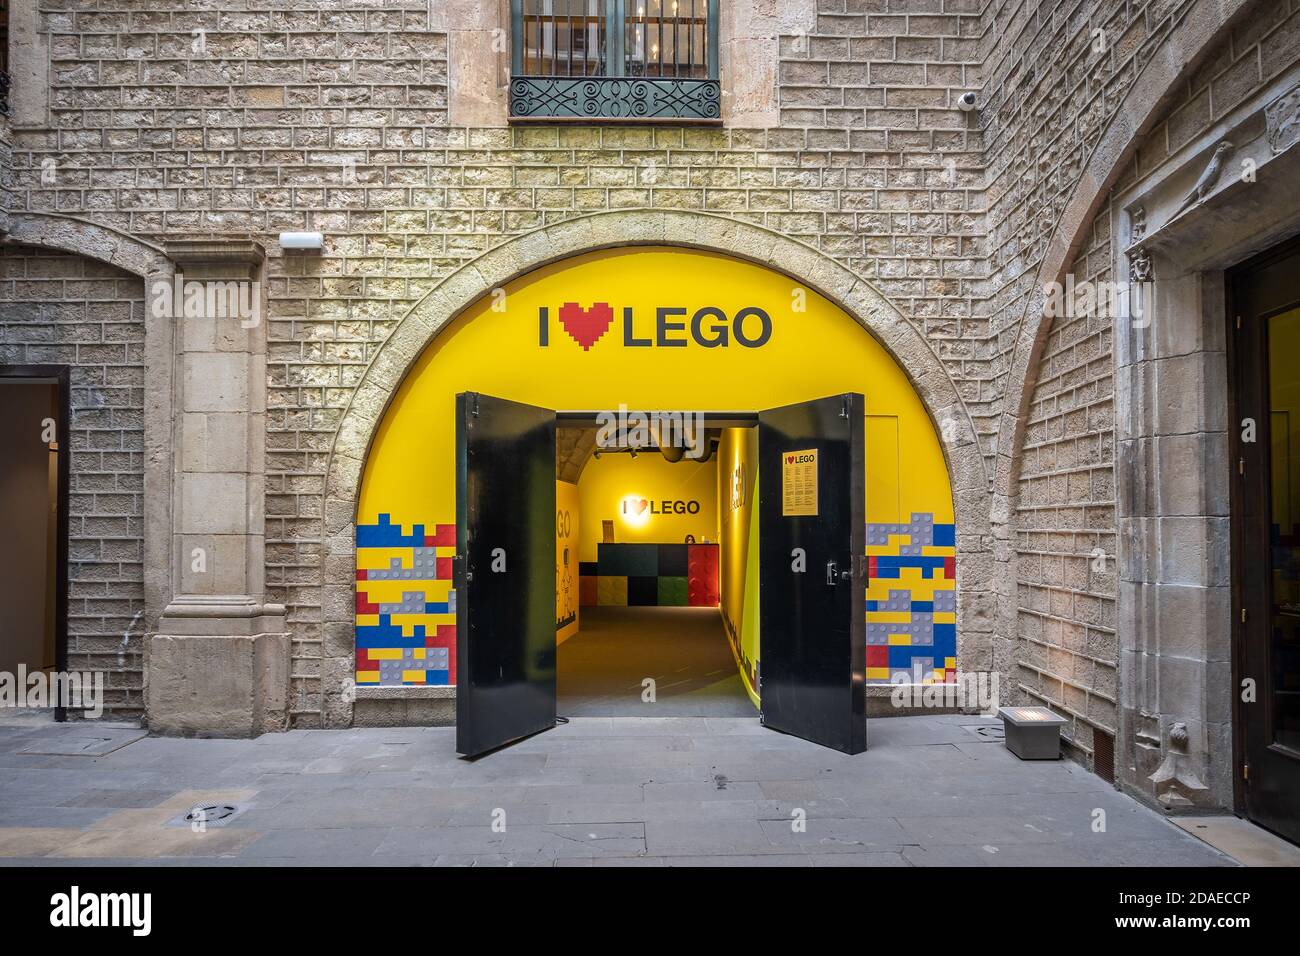 Barcelone, Espagne - 25 février 2020 : entrée de l'exposition I Love Lego près du centre-ville Banque D'Images